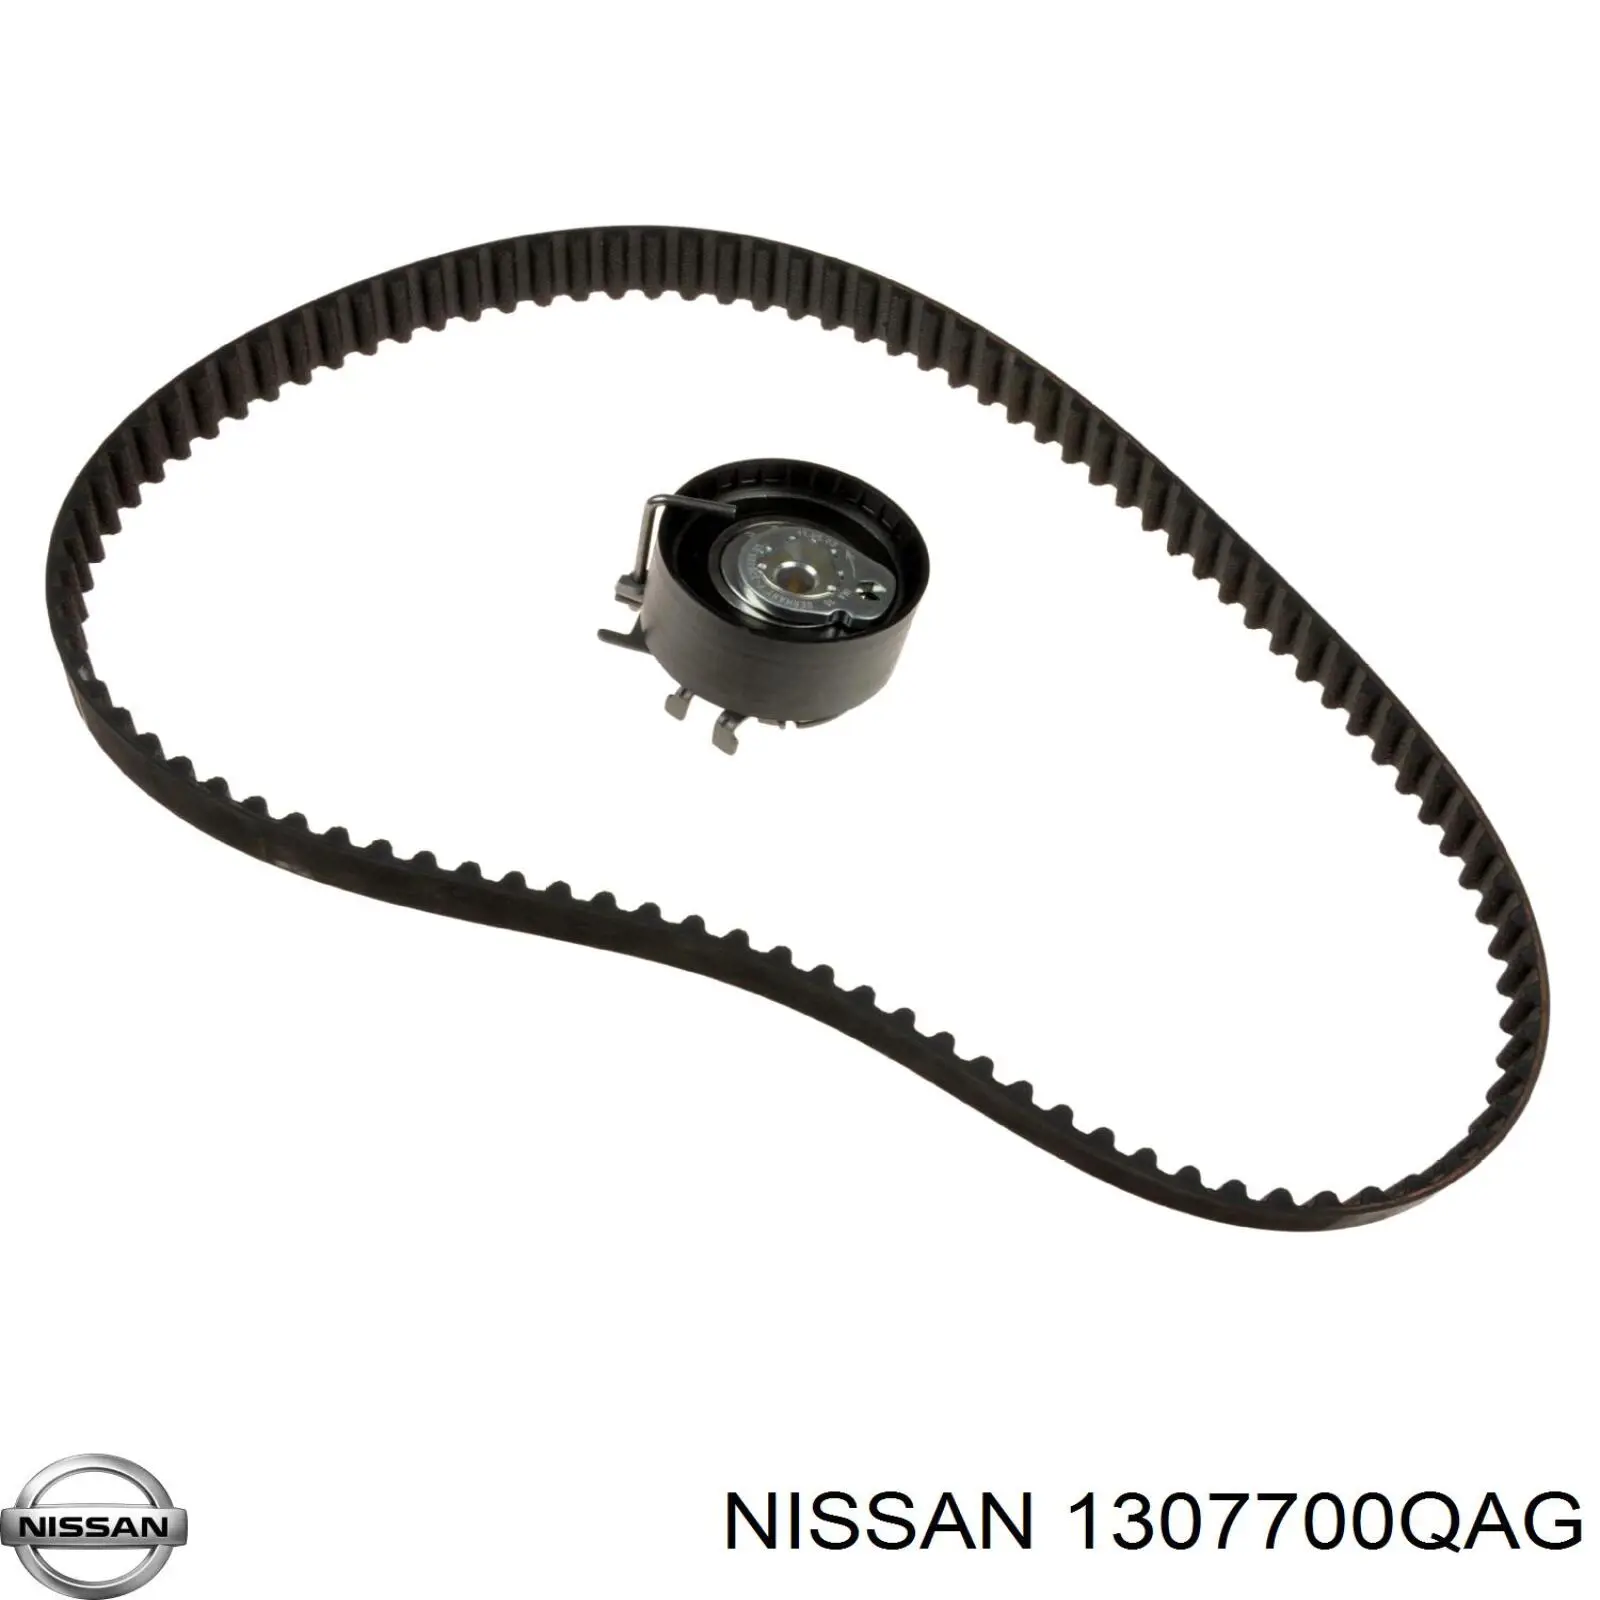 1307700QAG Nissan tensor correa distribución